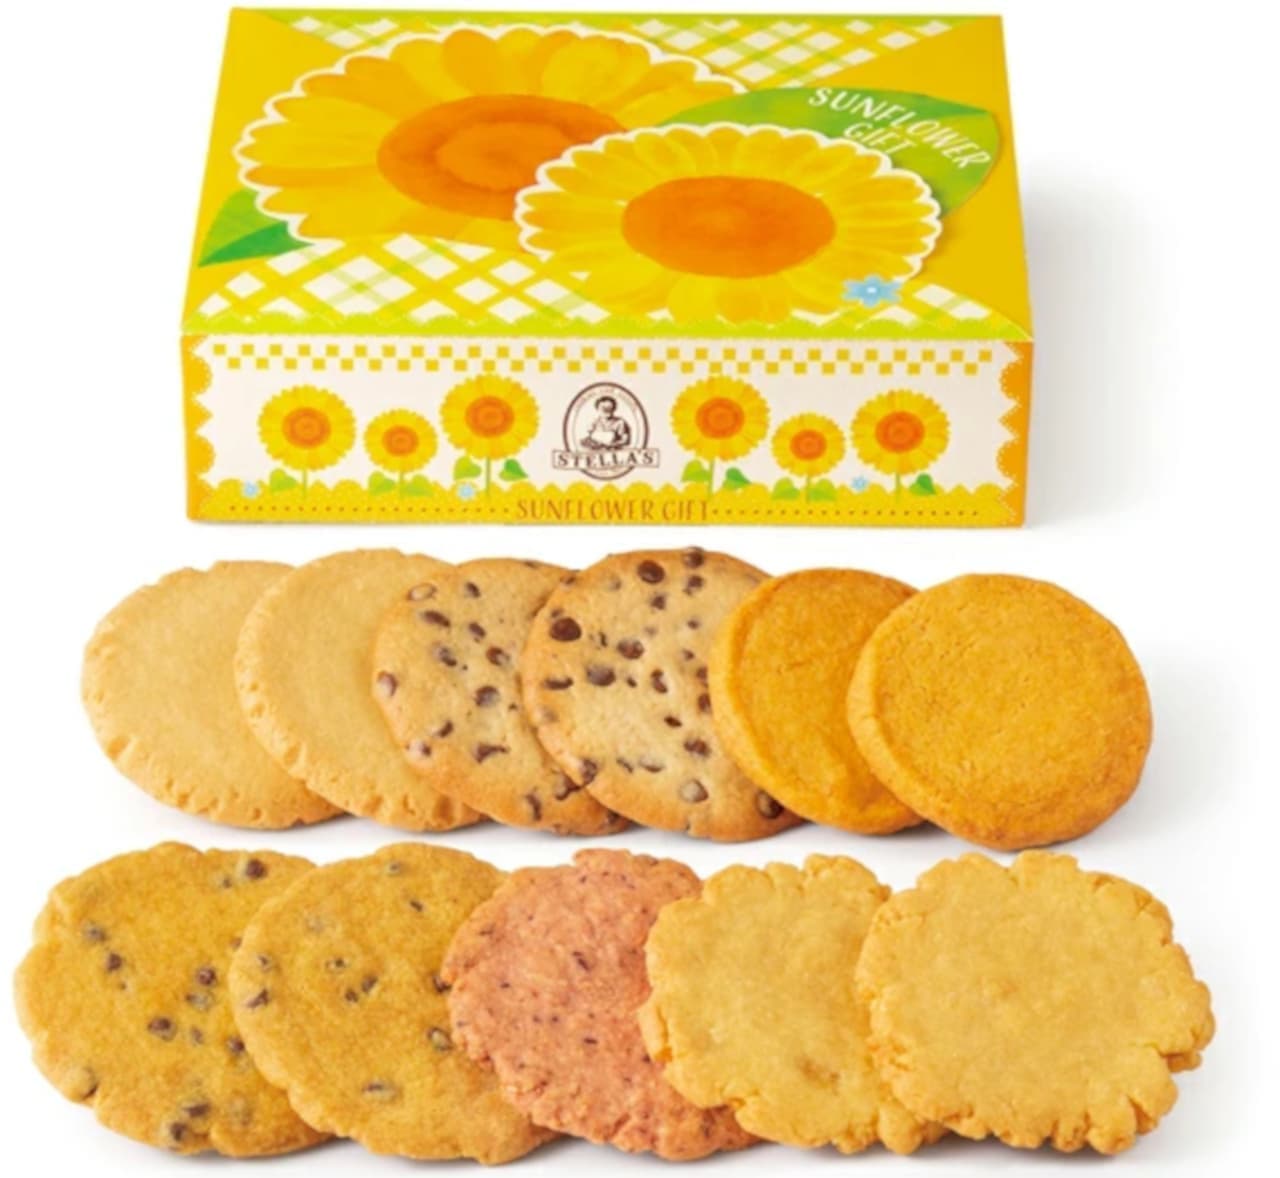 ステラおばさんのクッキー「ひまわりギフト」「ピスタチオクッキーギフト」「ステラおばさんのレモンクッキーギフト」